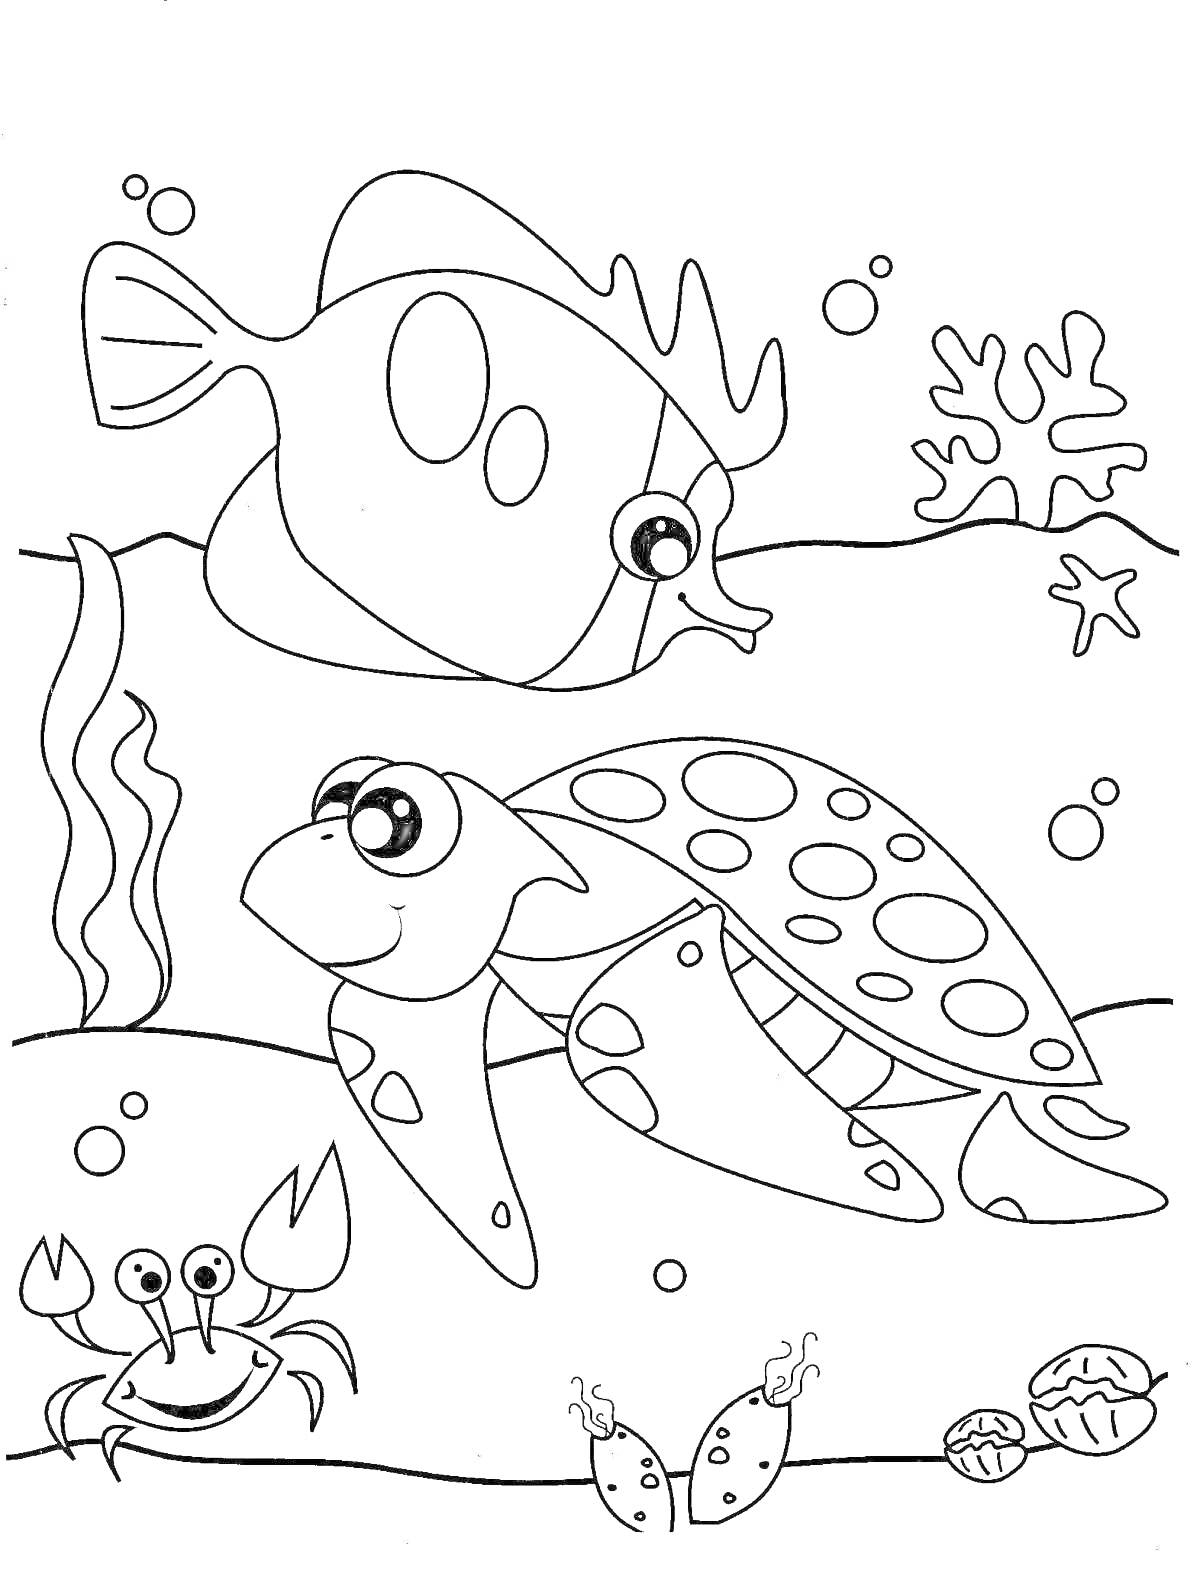 Раскраска Рыба, черепаха, краб, морские улитки, водоросли и кораллы